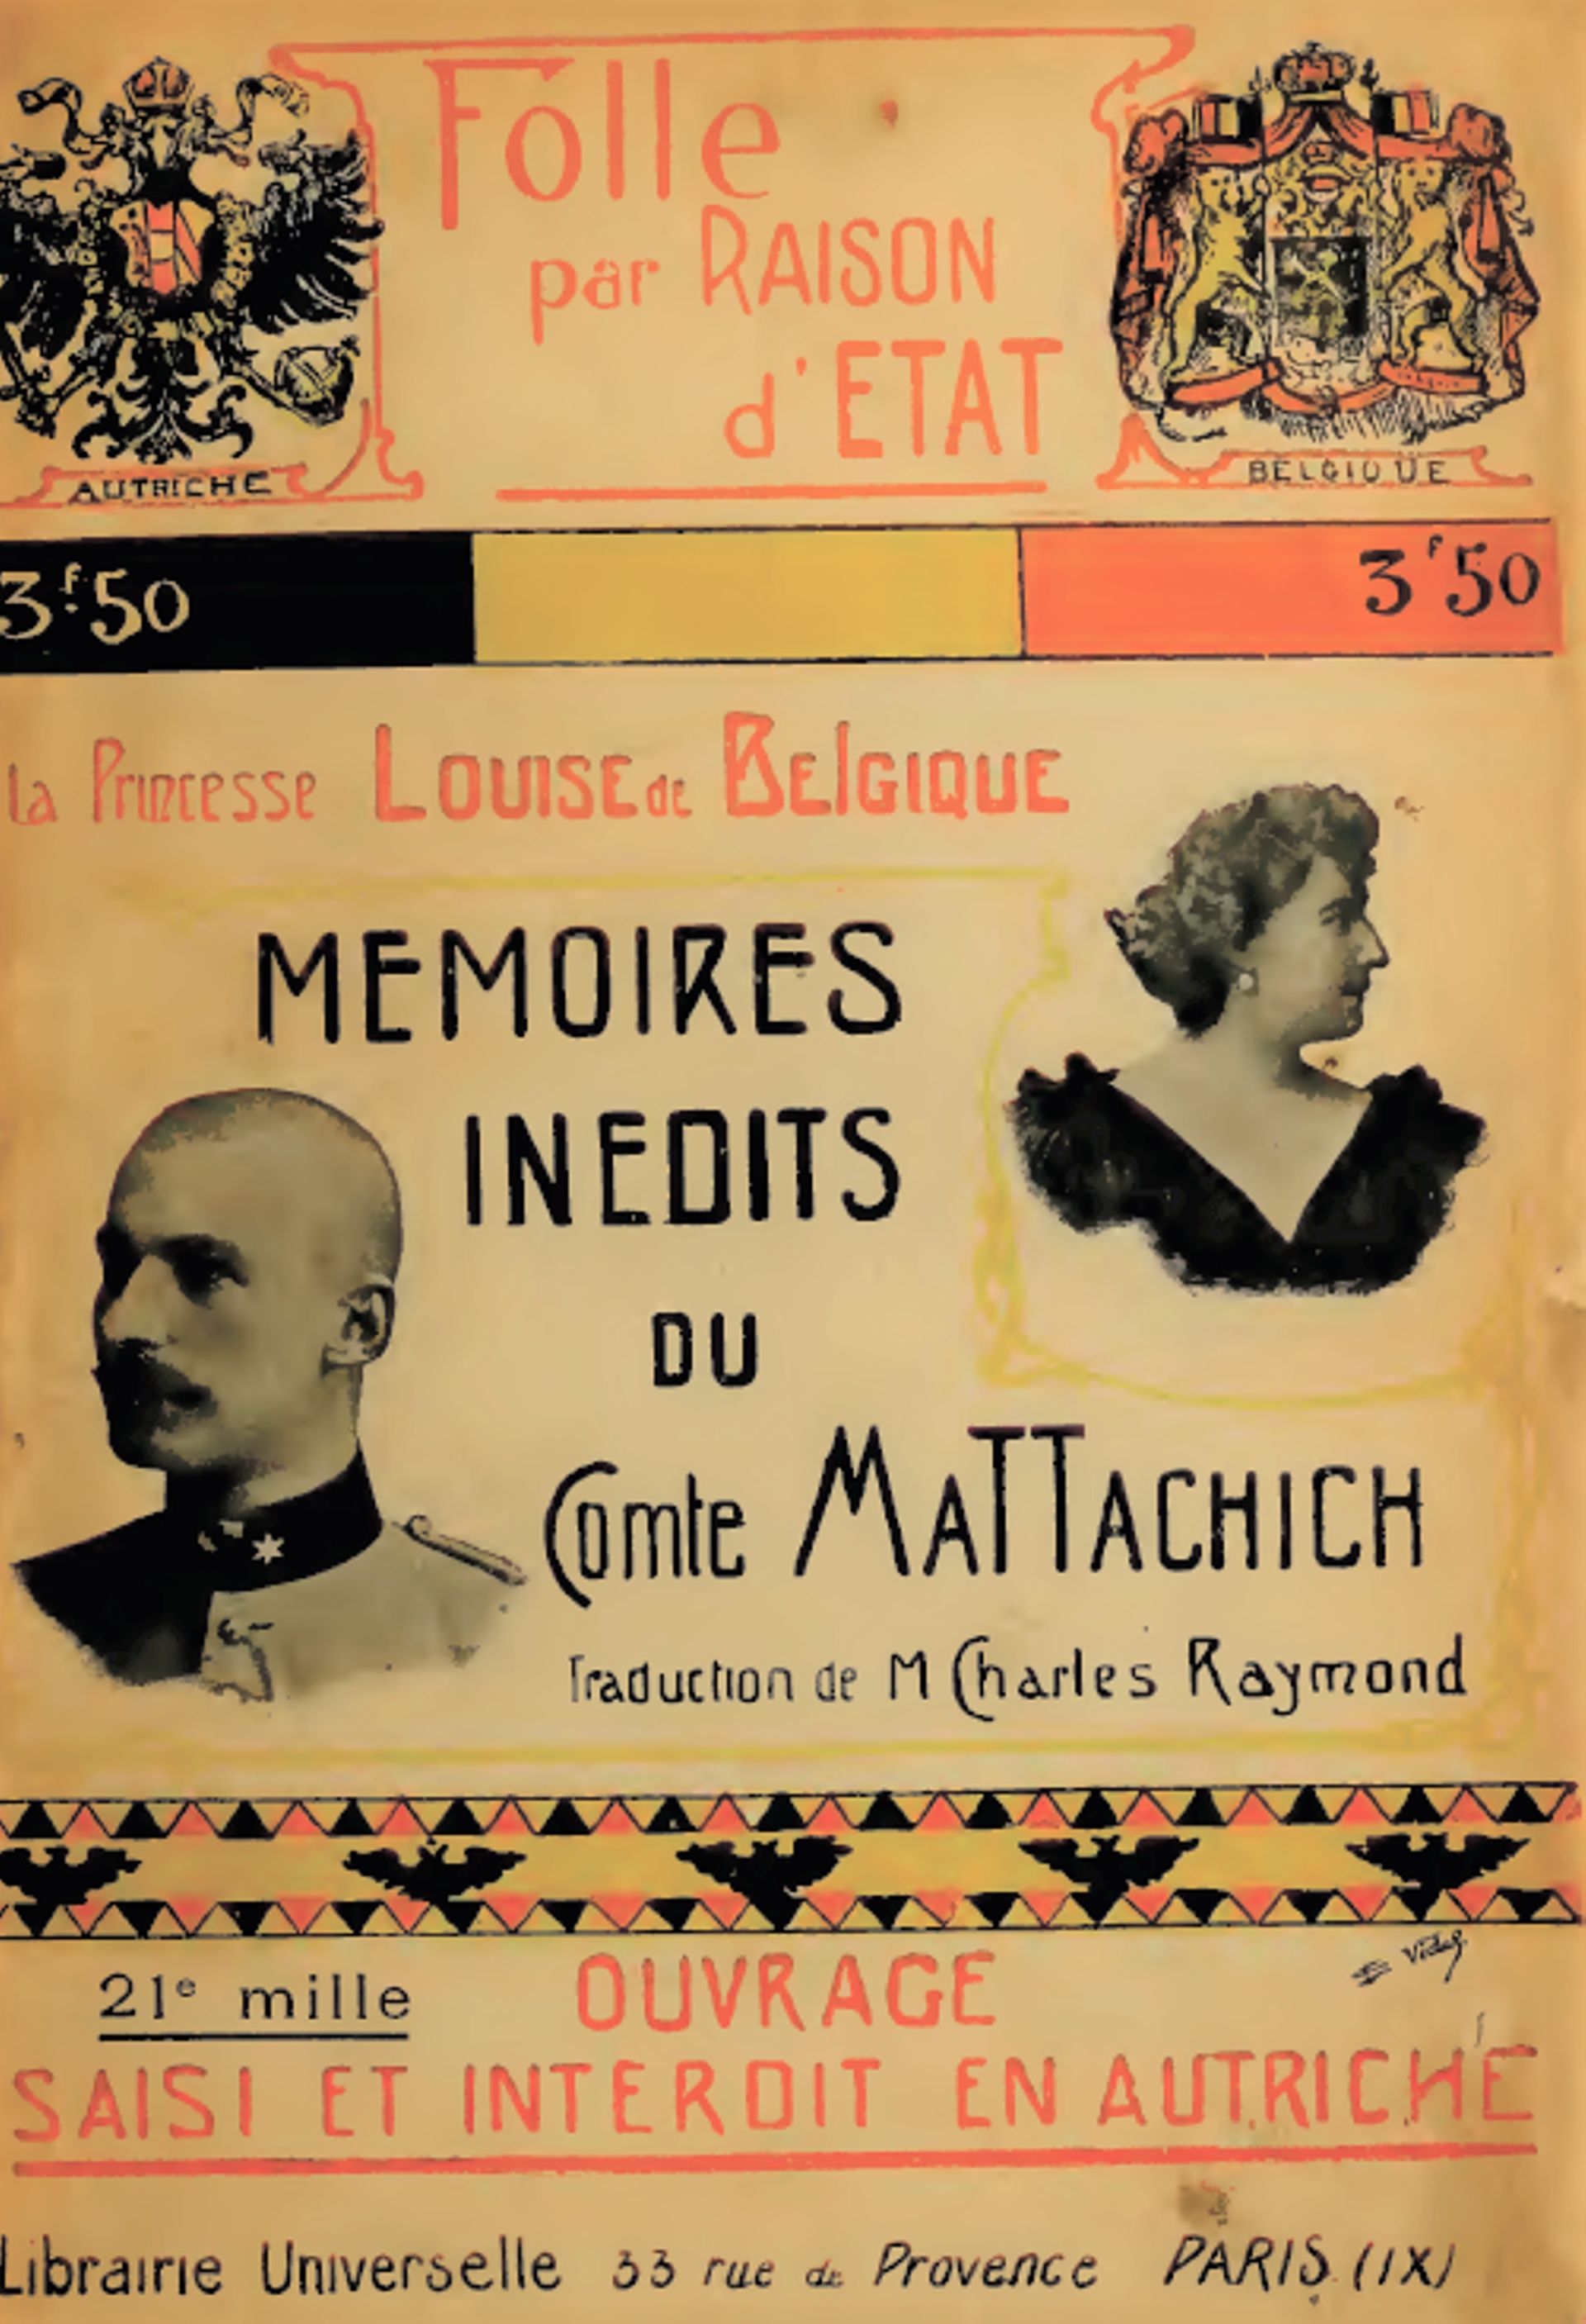 « Folle pour raison d’État », mémoires de Géza Mattechich, originellement publiés en 1904 à Leipzig. 